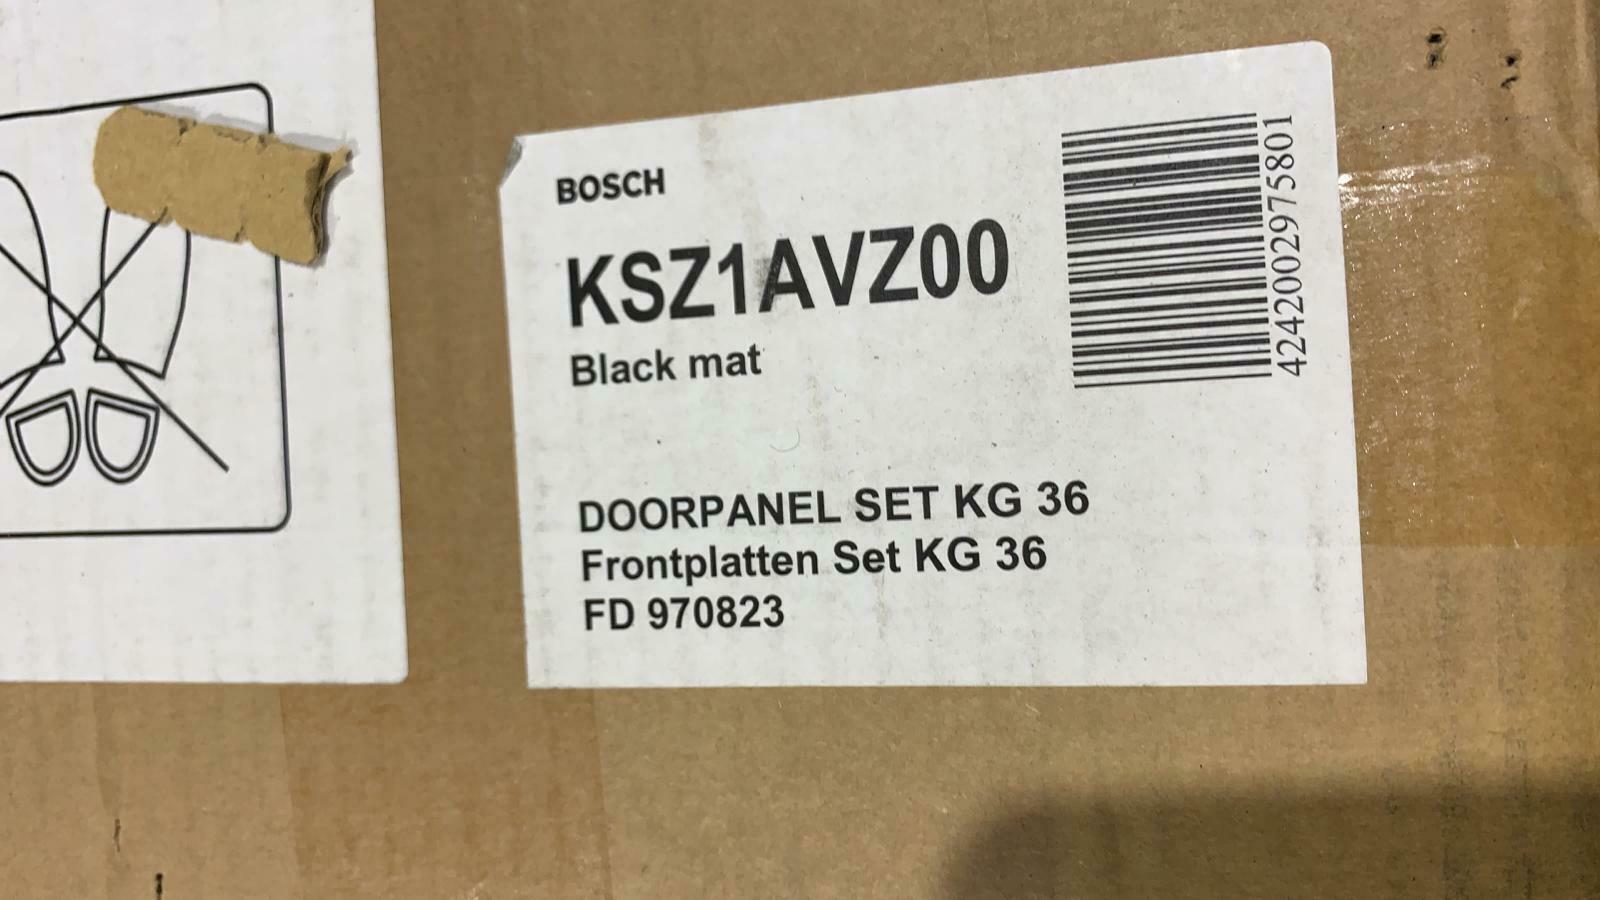 Bosch Freezer-Freestanding-(H)1860mm (W)600mm-Matt black -KSZ1AVZ00-n801